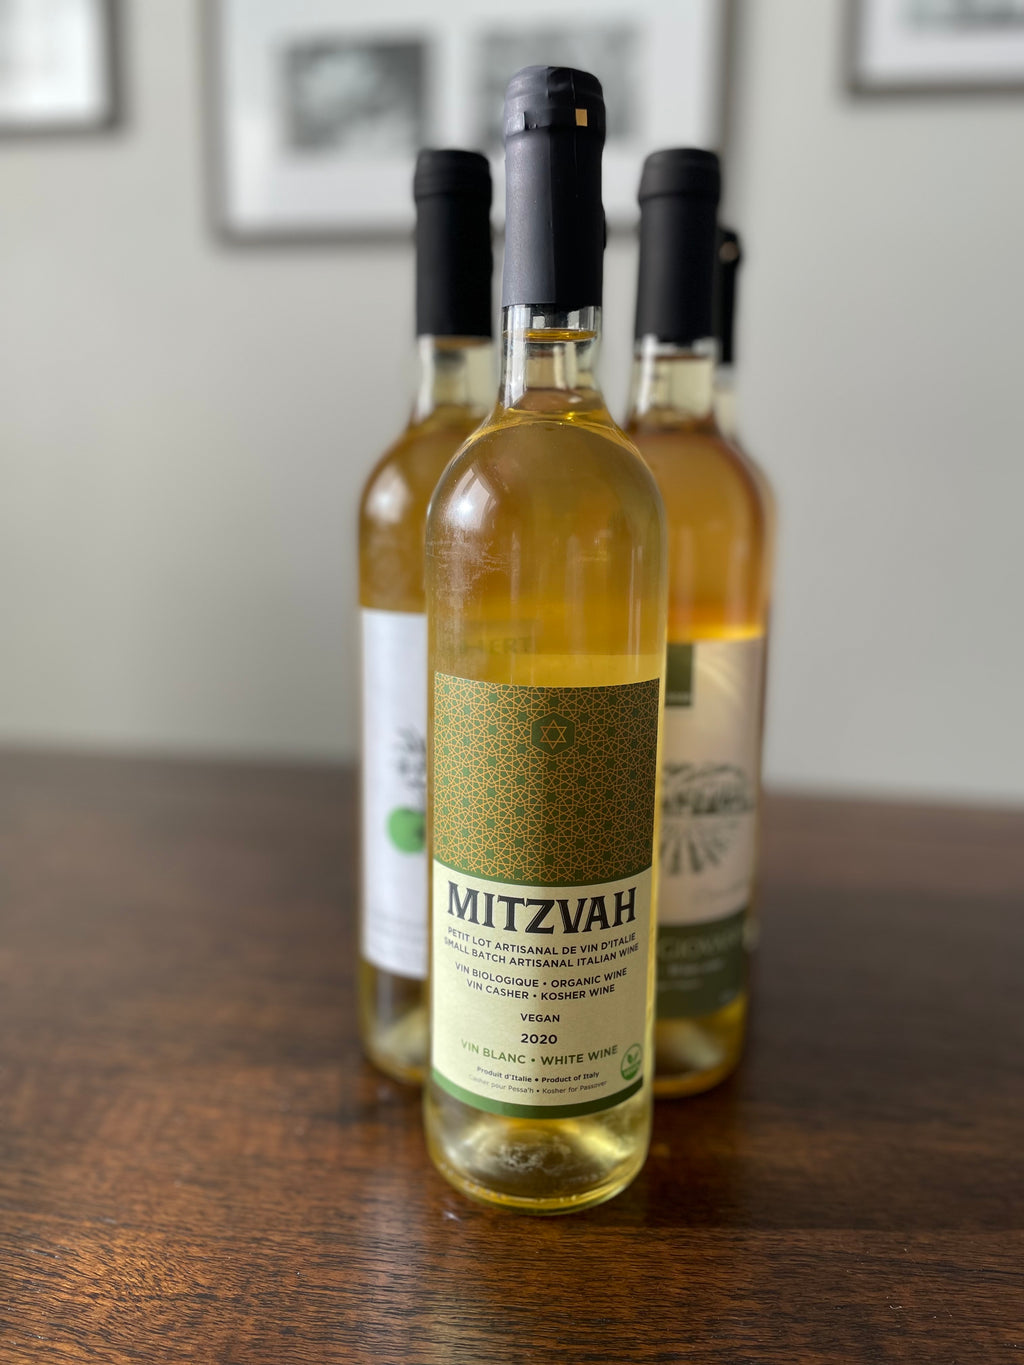 VIN BLANC / WHITE WINE  MITZVAH 2020